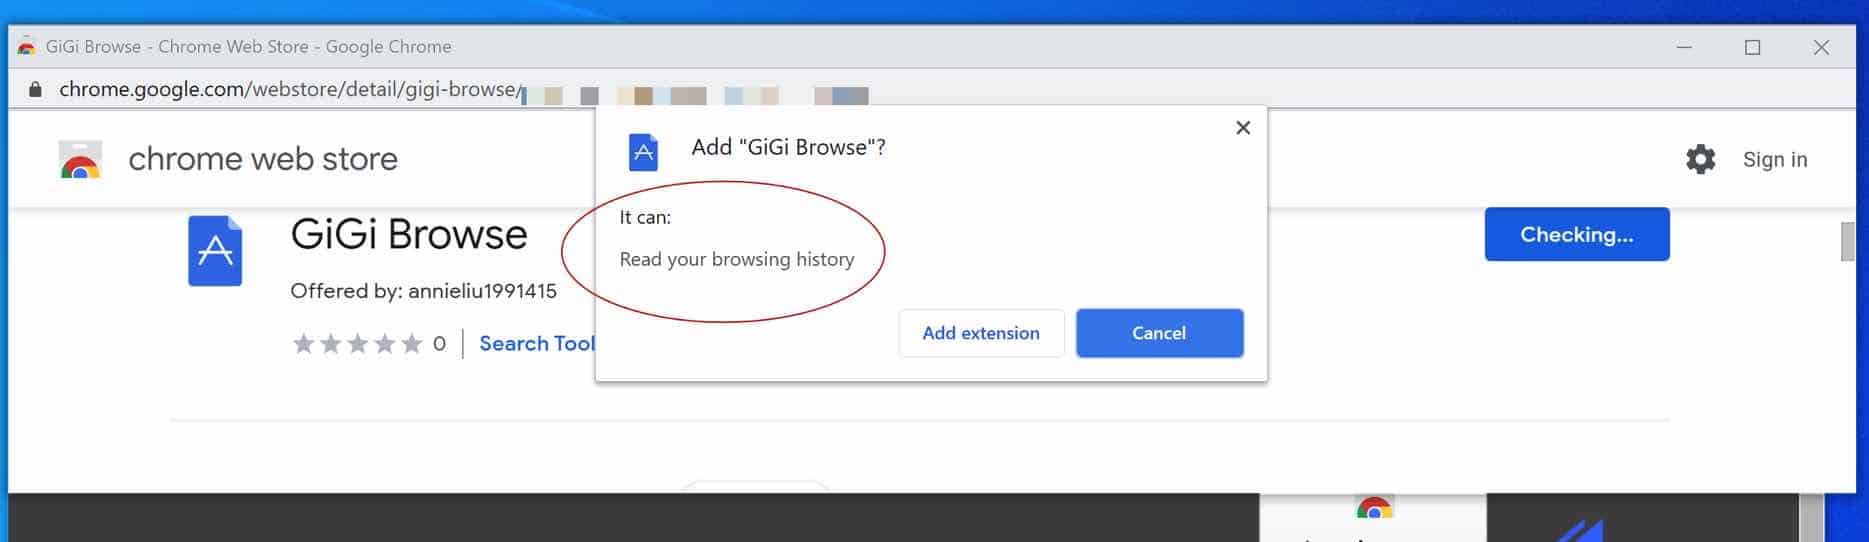 GiGi browse adware